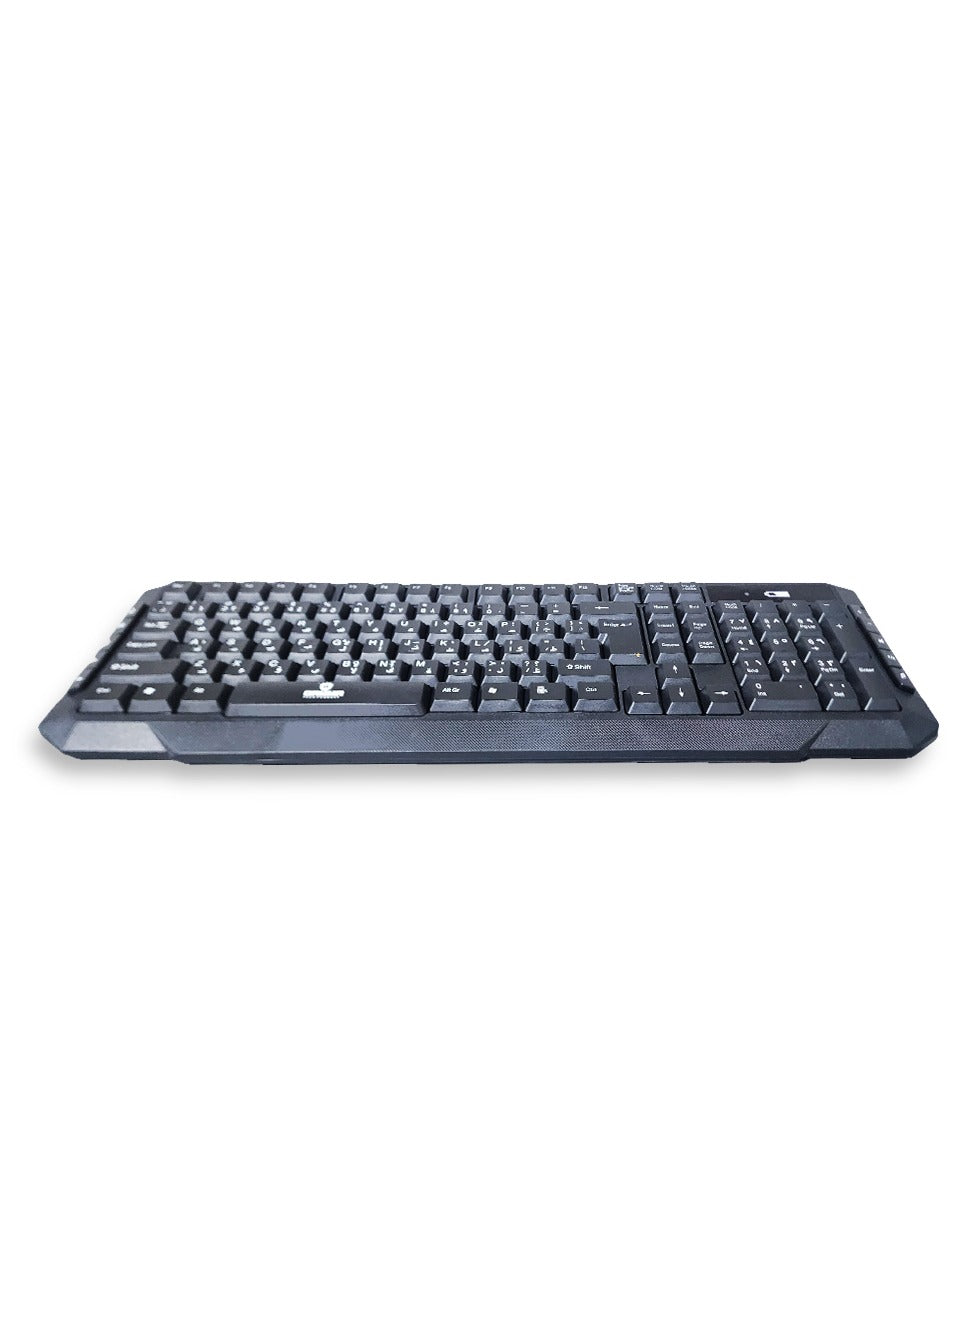 Gamma wireless keyboard & Mouse 2.4g - Silent Key , Standard 104 Key K-516